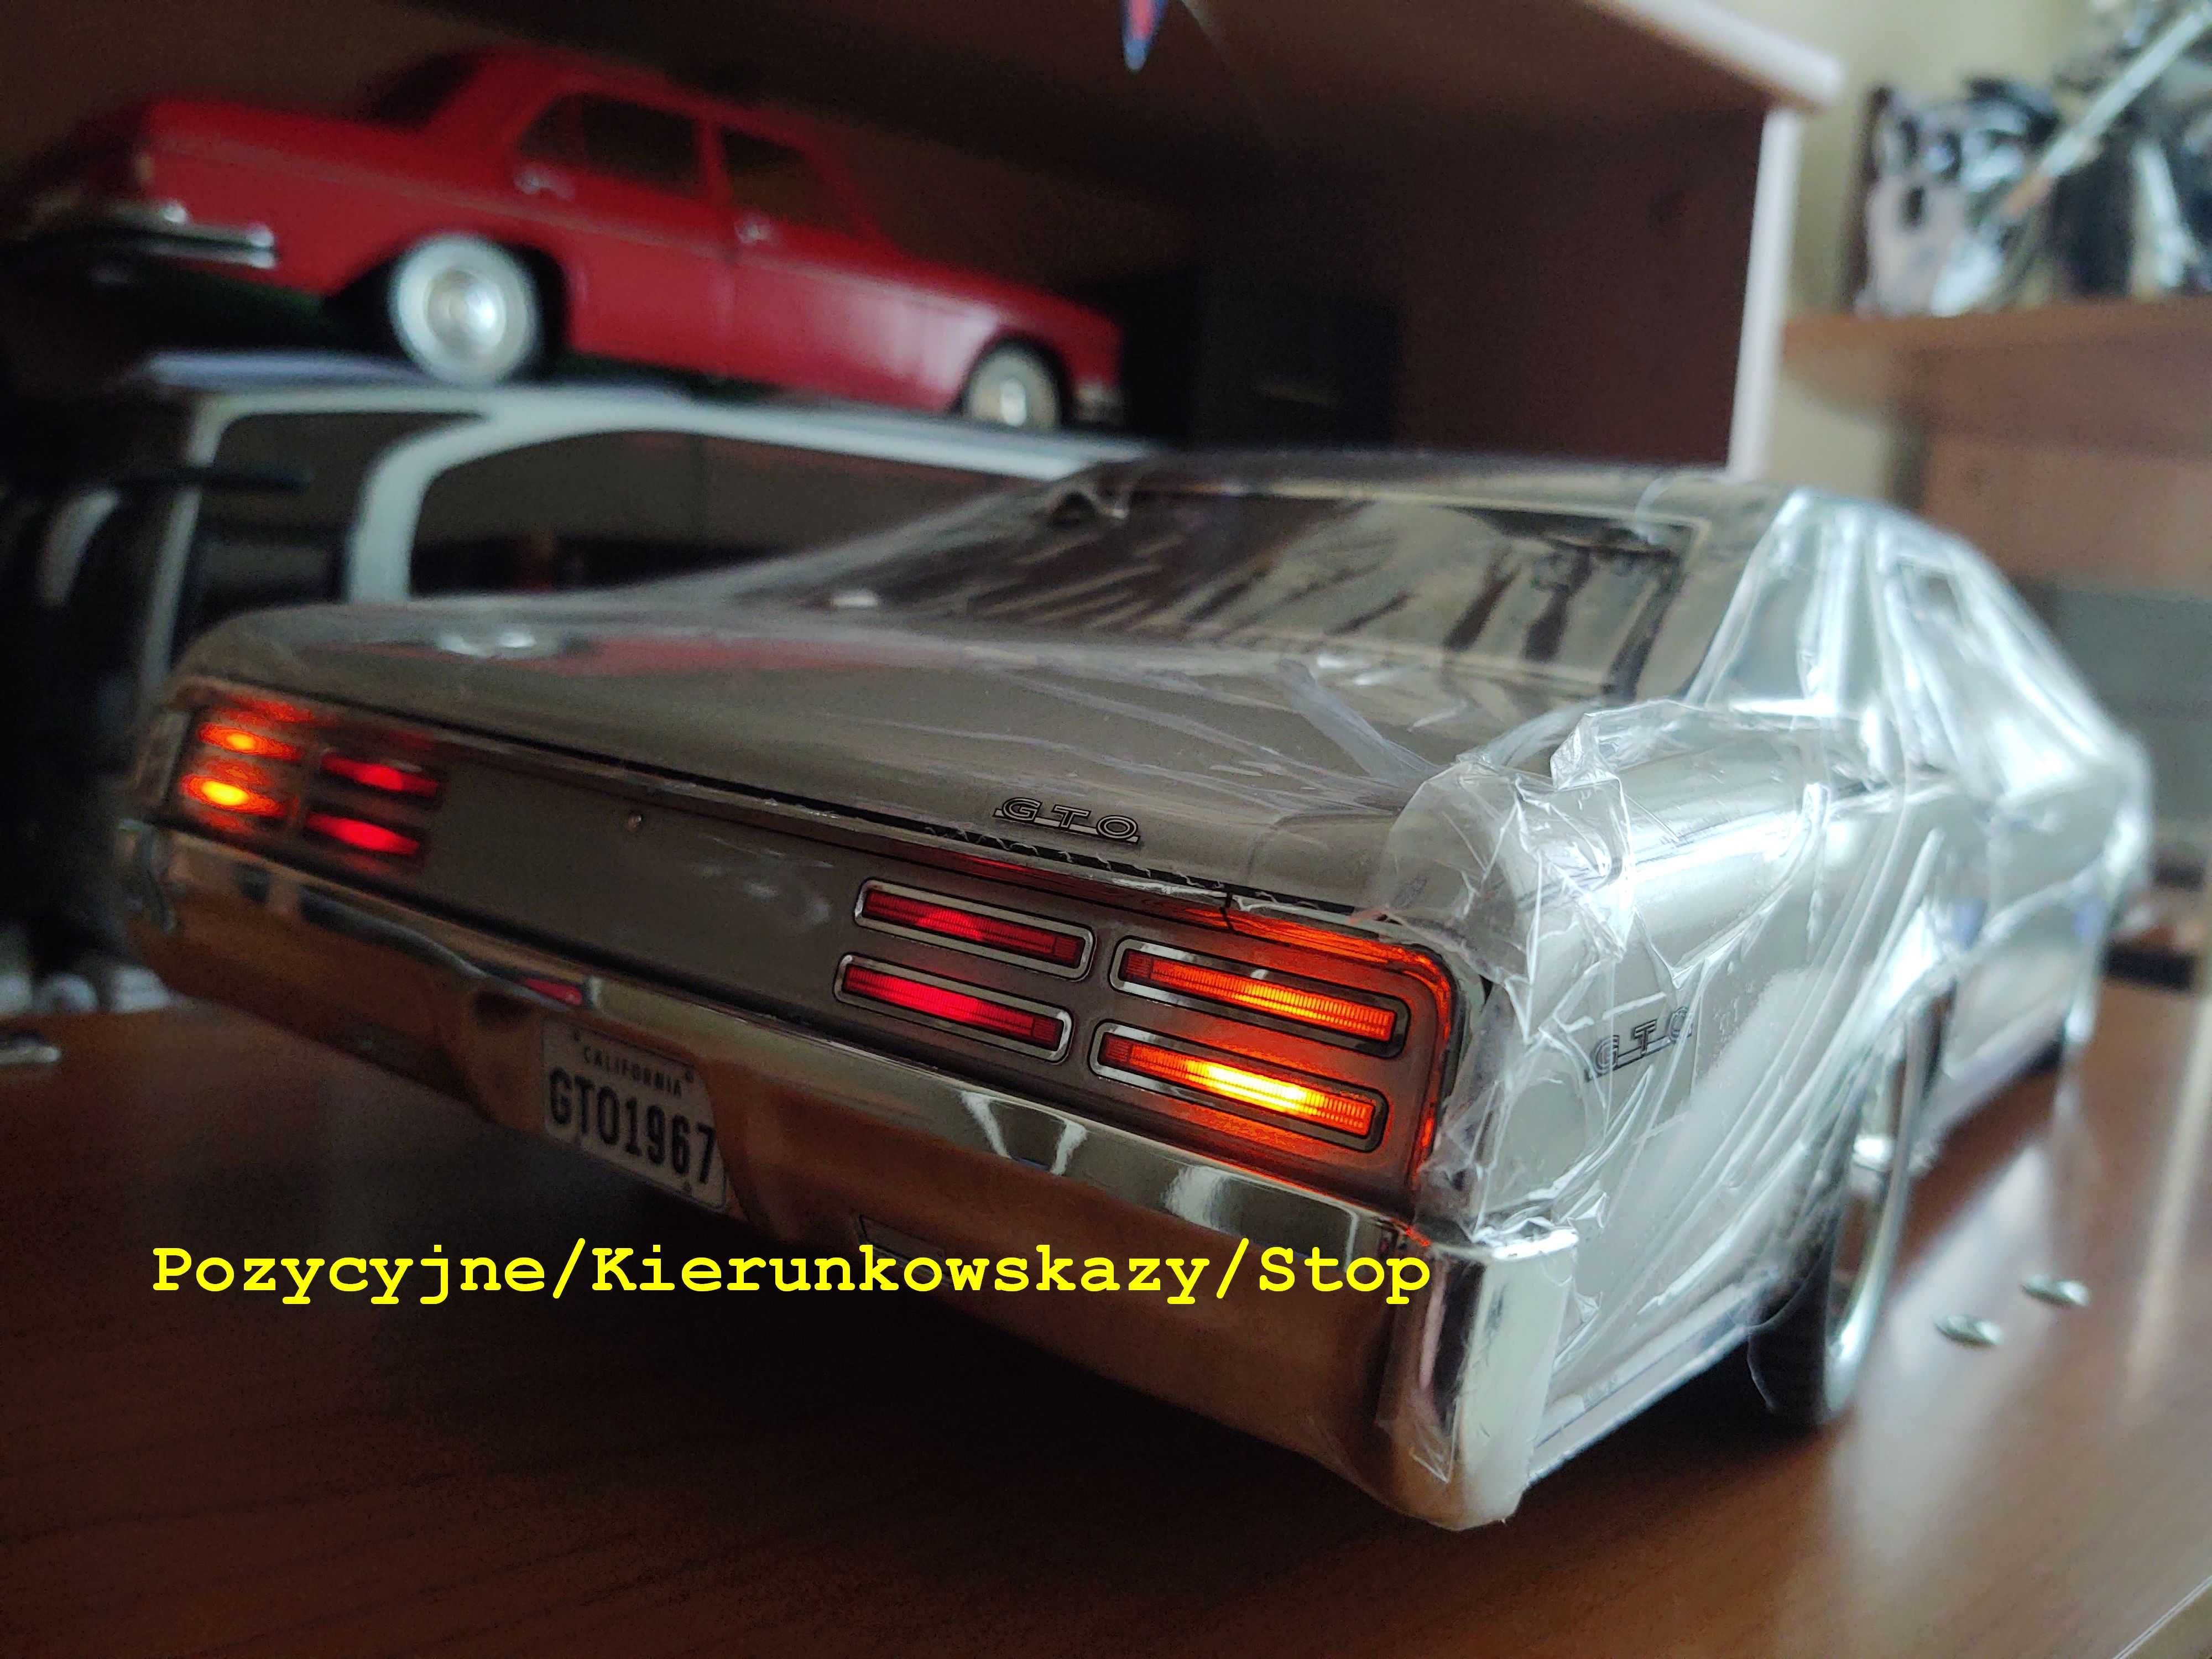 Pontiac GTO 1967 RTR KYOSHO skala 1:10 4WD Oświetlenie.Fabr Nowy.